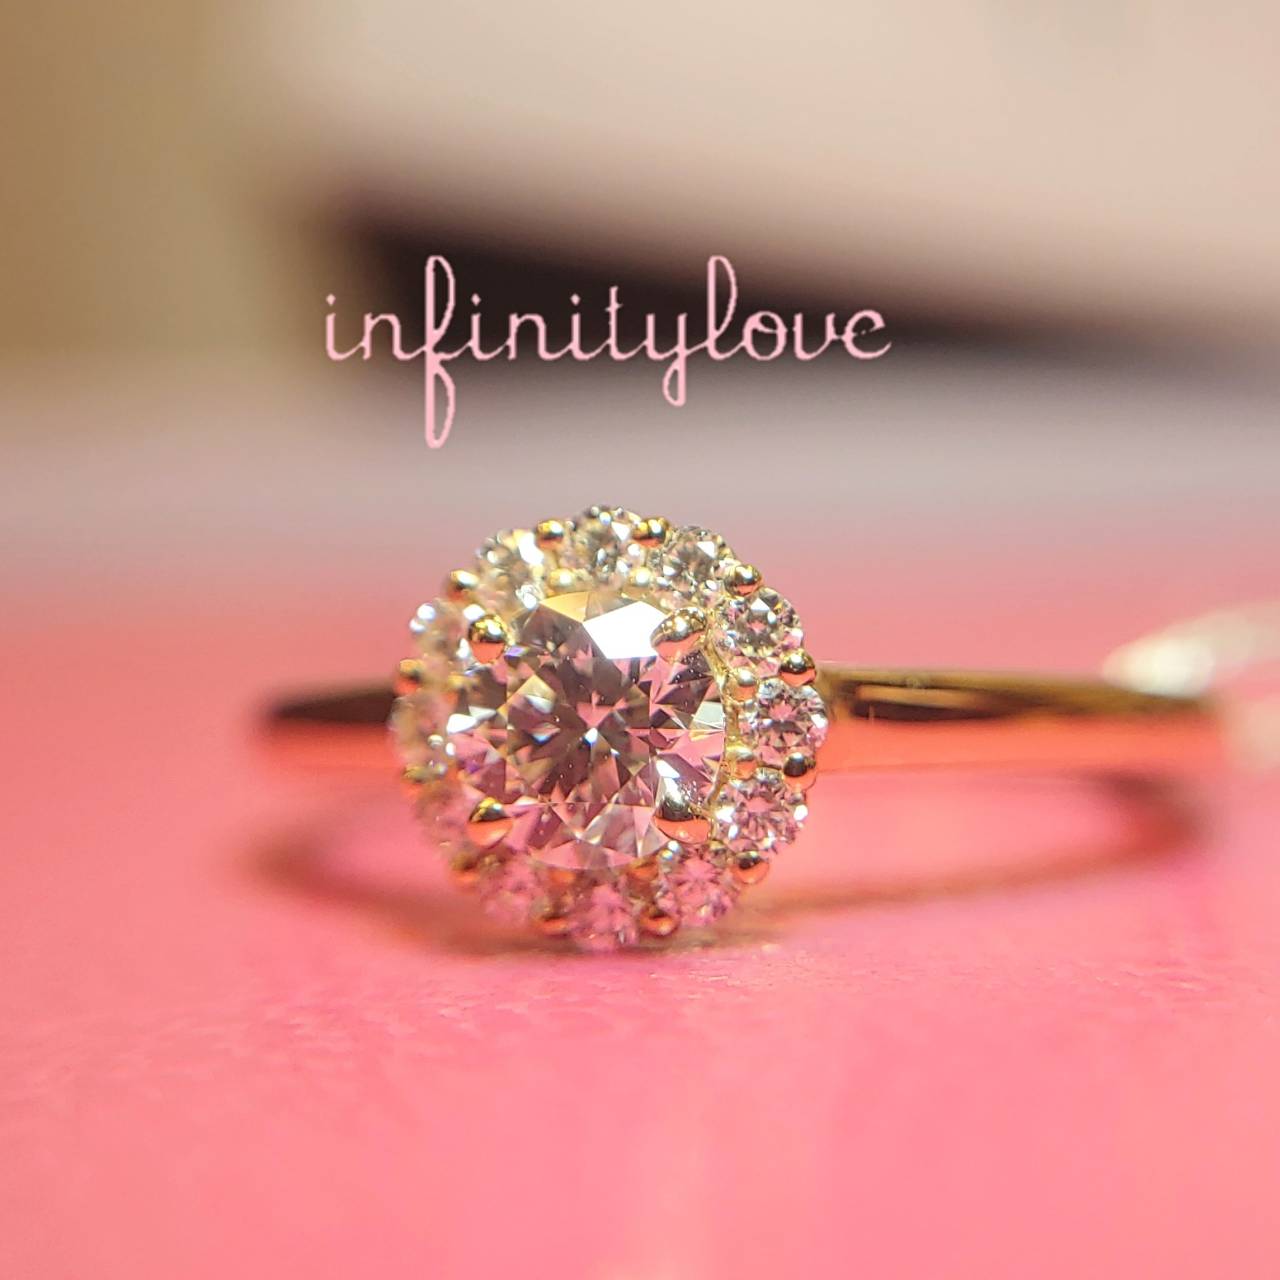 ひまわりがモチーフのボタニカルデザインの婚約指輪infinityloveSunFlower